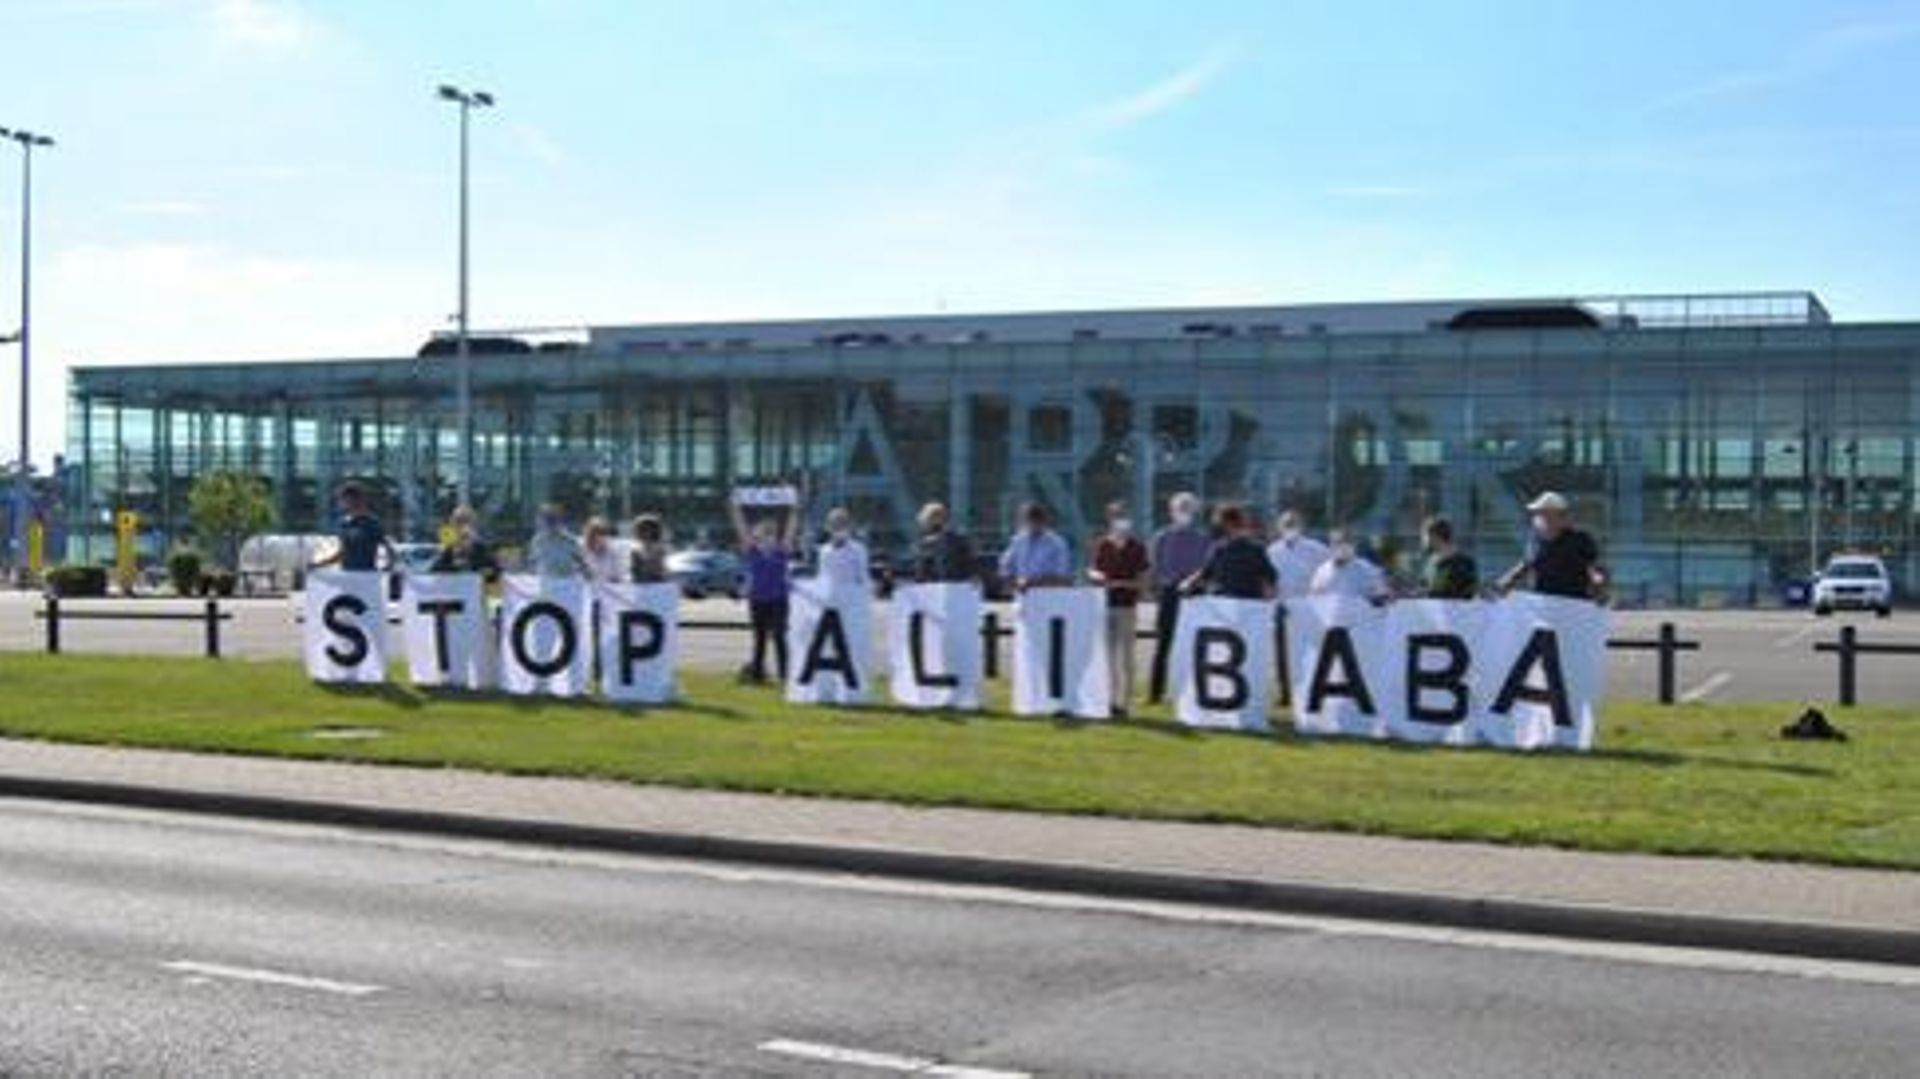 Ce lundi soir, à Liège, les militants du groupe "Stop Alibaba & co" se sont donné rendez-vous pour manifester au conseil communal.